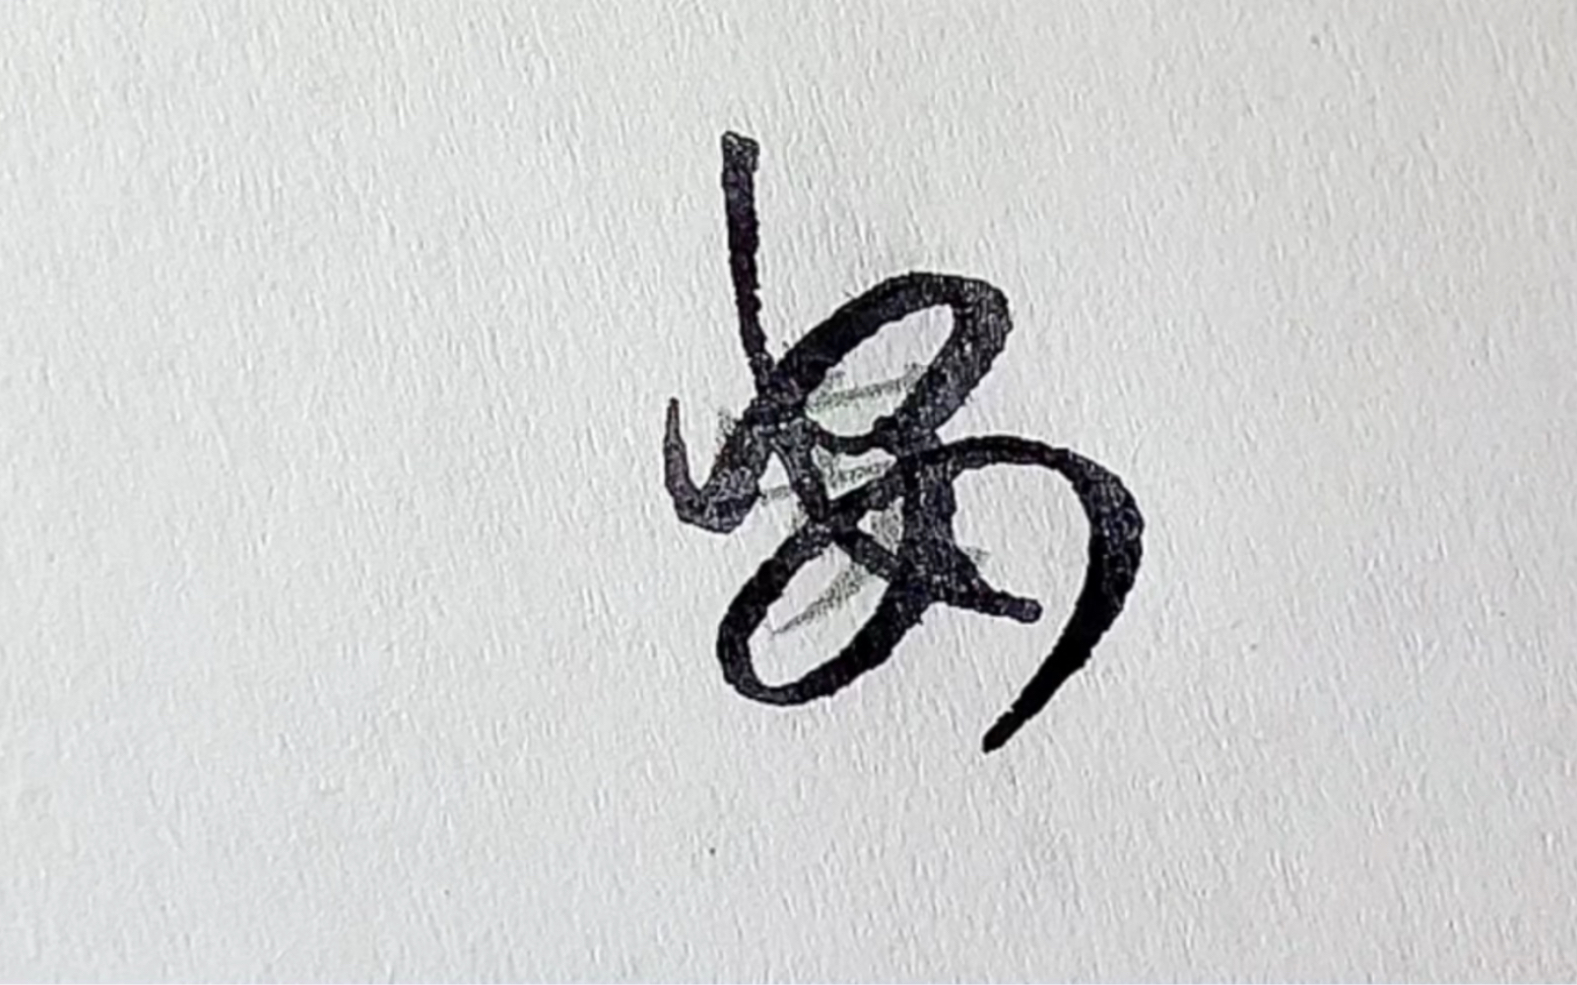 别再说是鬼画符了，我的确是在认真写字，中国汉字博大精深，偶尔有几个你不认识的书体也很正常